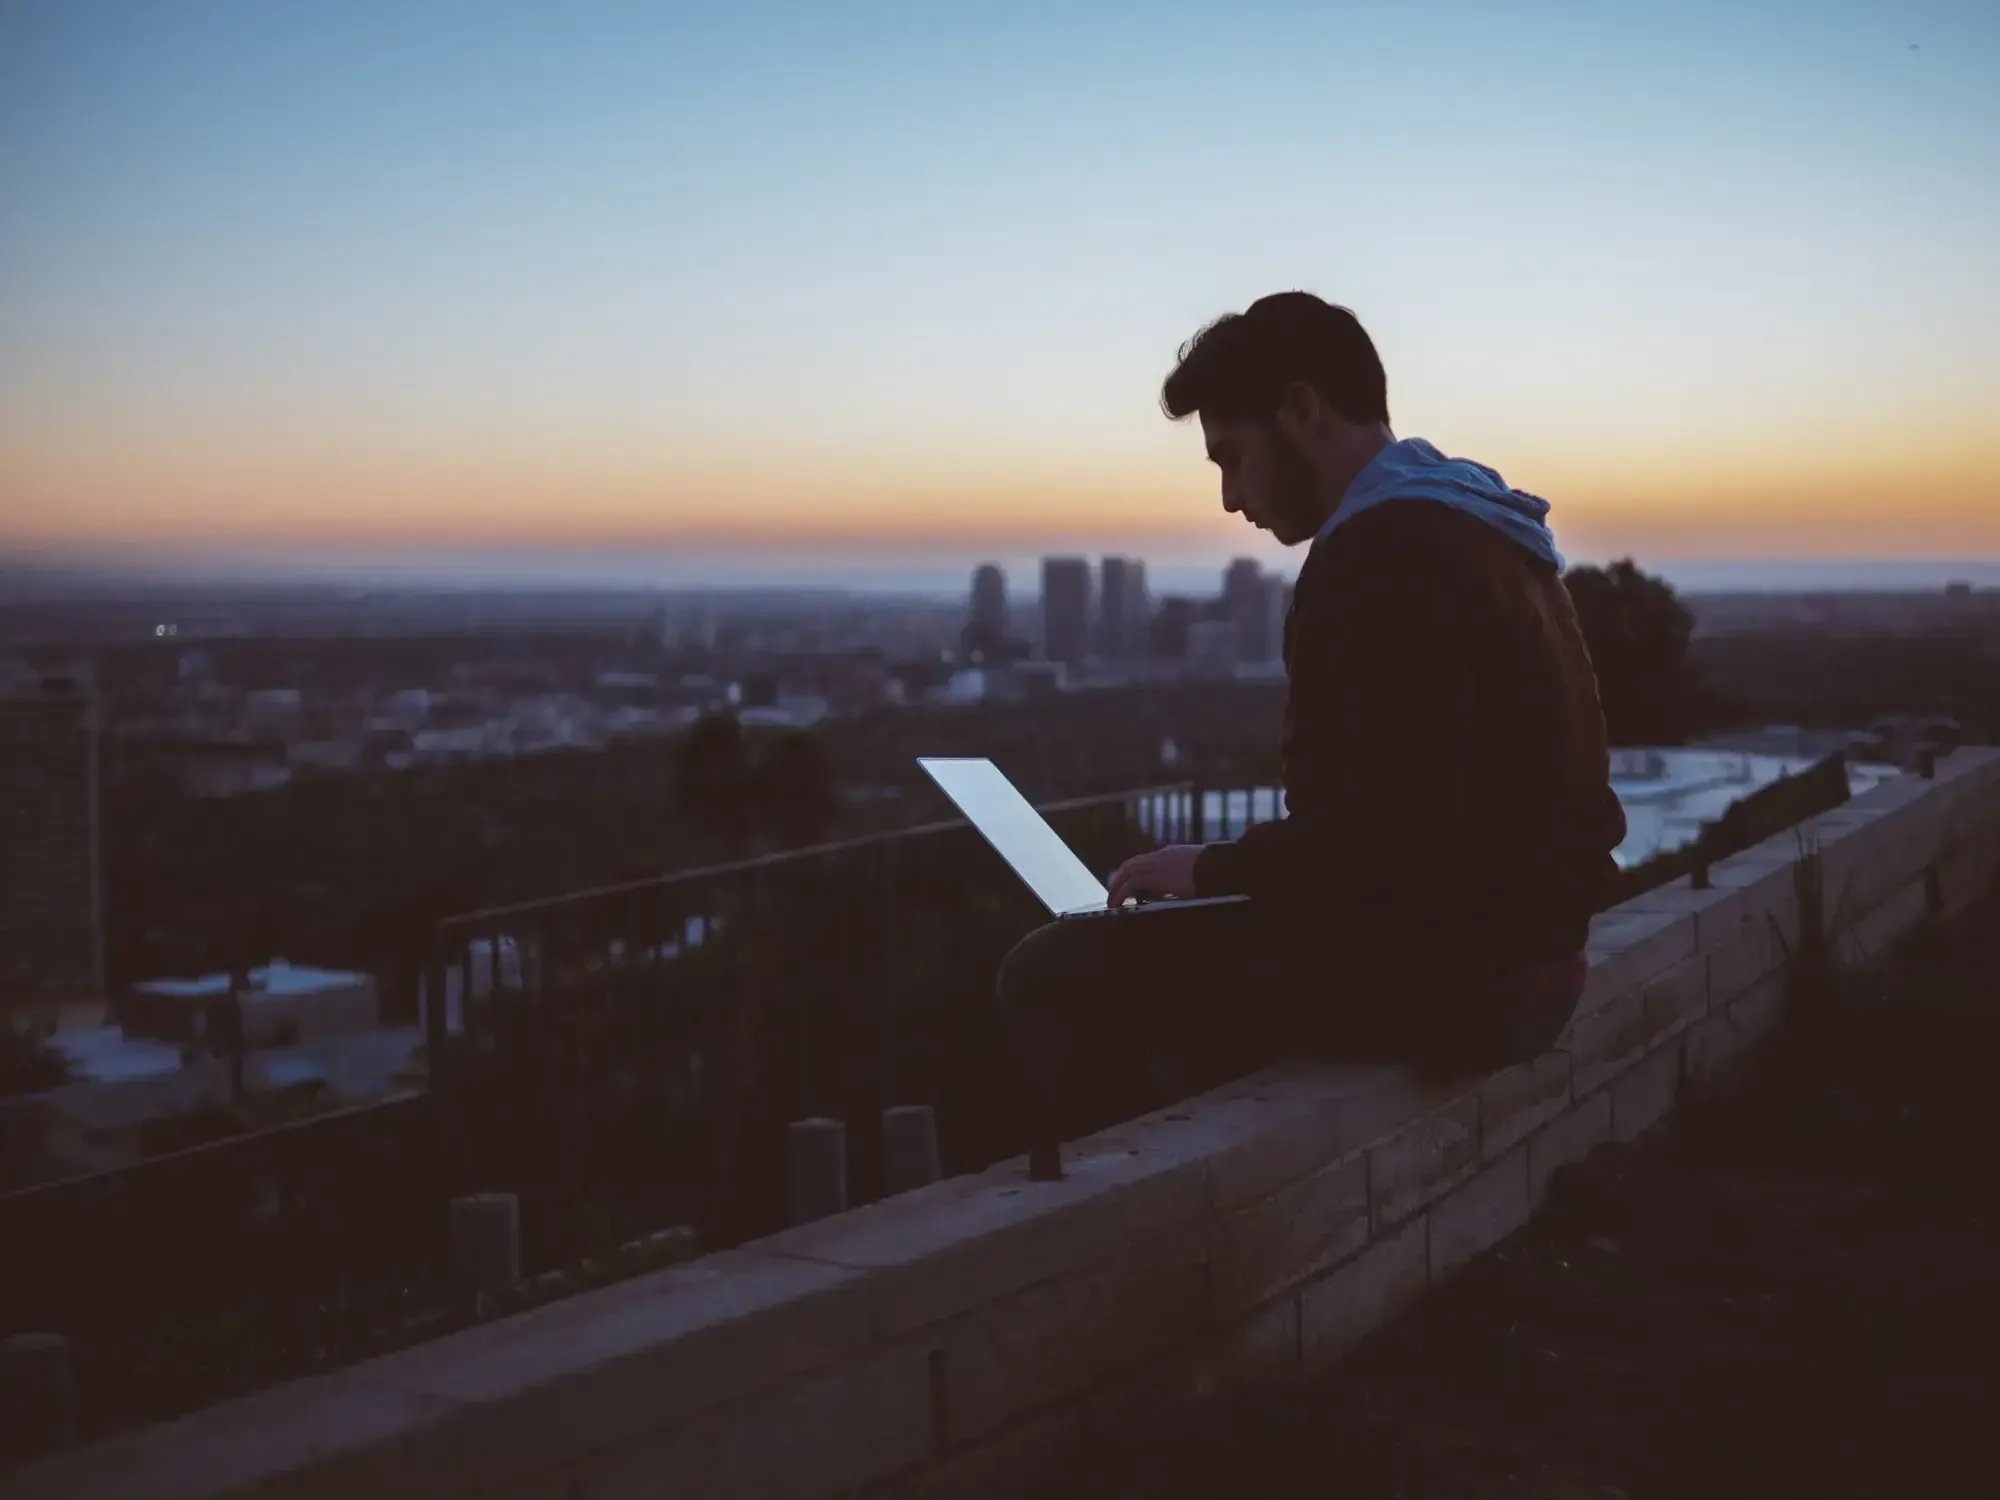 Mann sitzt auf Dachkante einer Dachterrasse und arbeitet an einem Laptop, im Hintergrund Sonnenaufgang und die Skyline einer Stadt zu sehen.